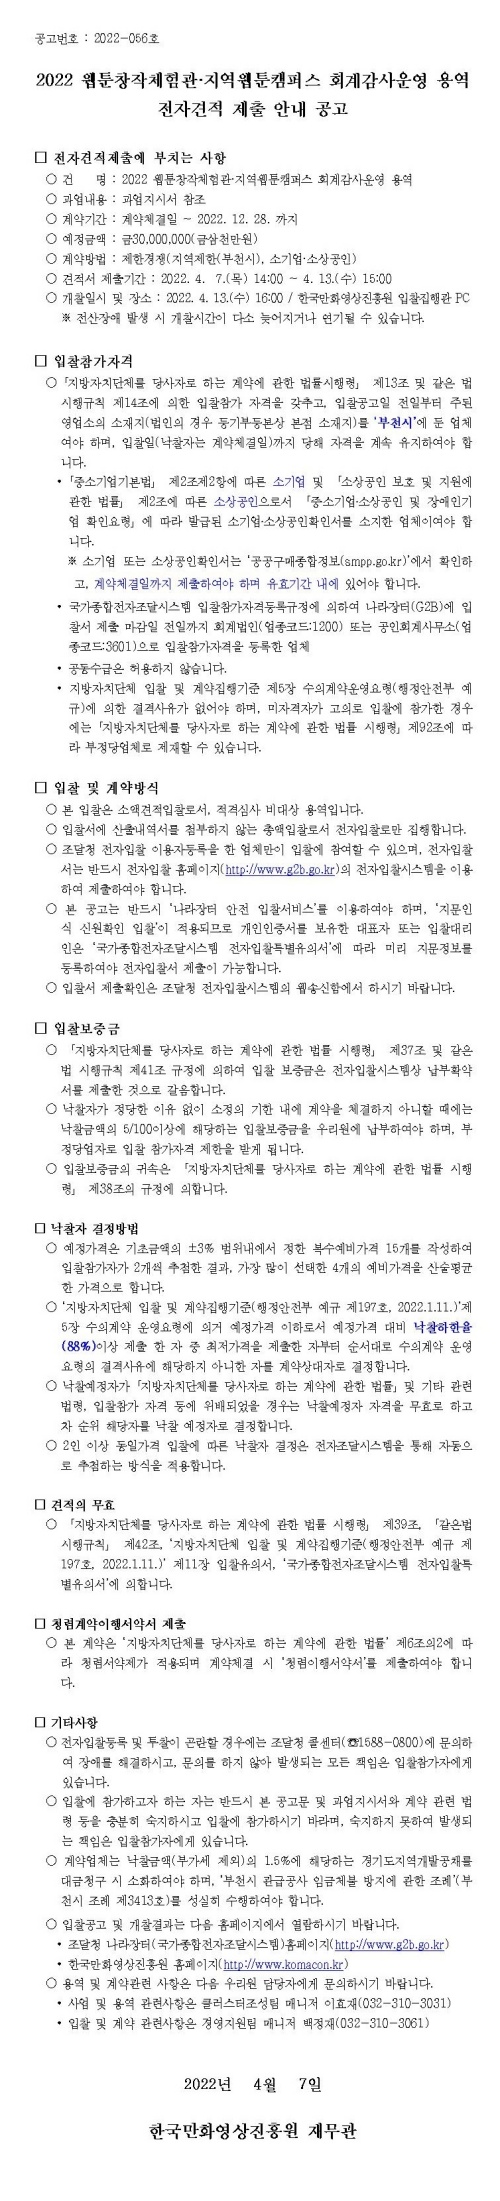 2022 웹툰창작체험관ㆍ지역웹툰캠퍼스 회계감사운영 용역 전자견적 제출 안내 공고